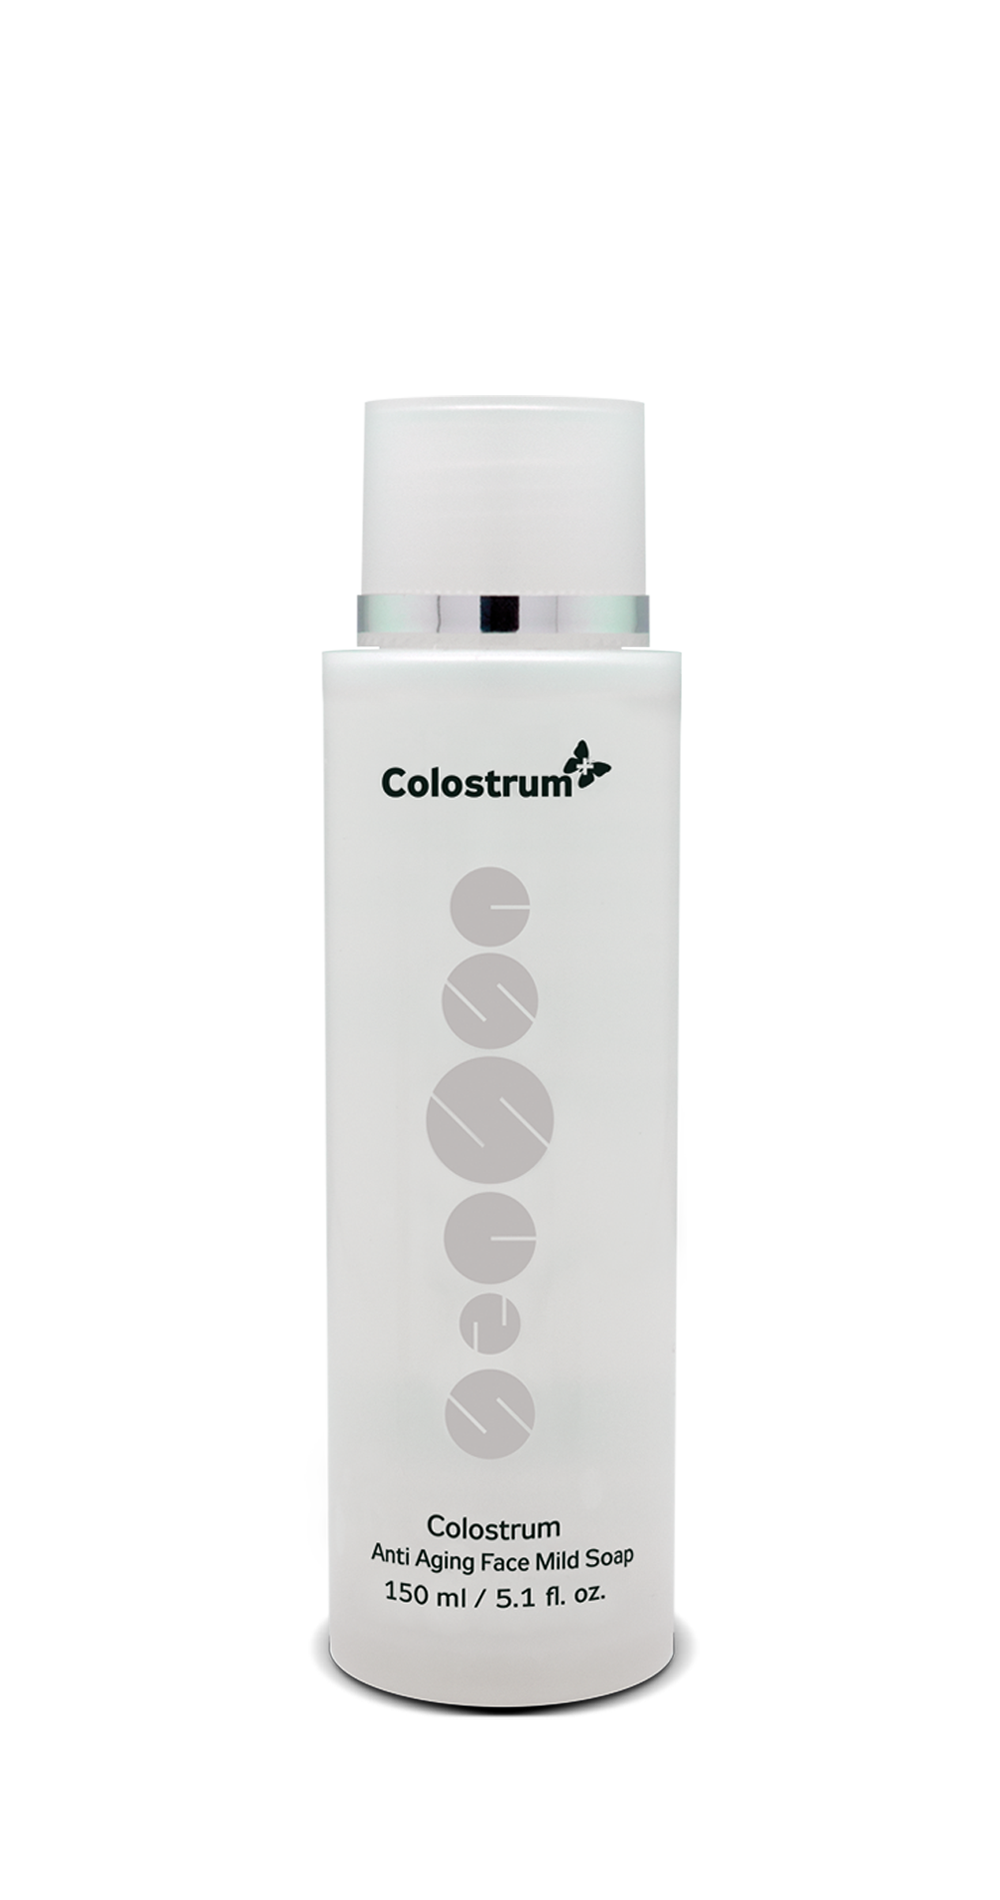 Anti Aging pleťové mýdlo Colostrum+ parfémované